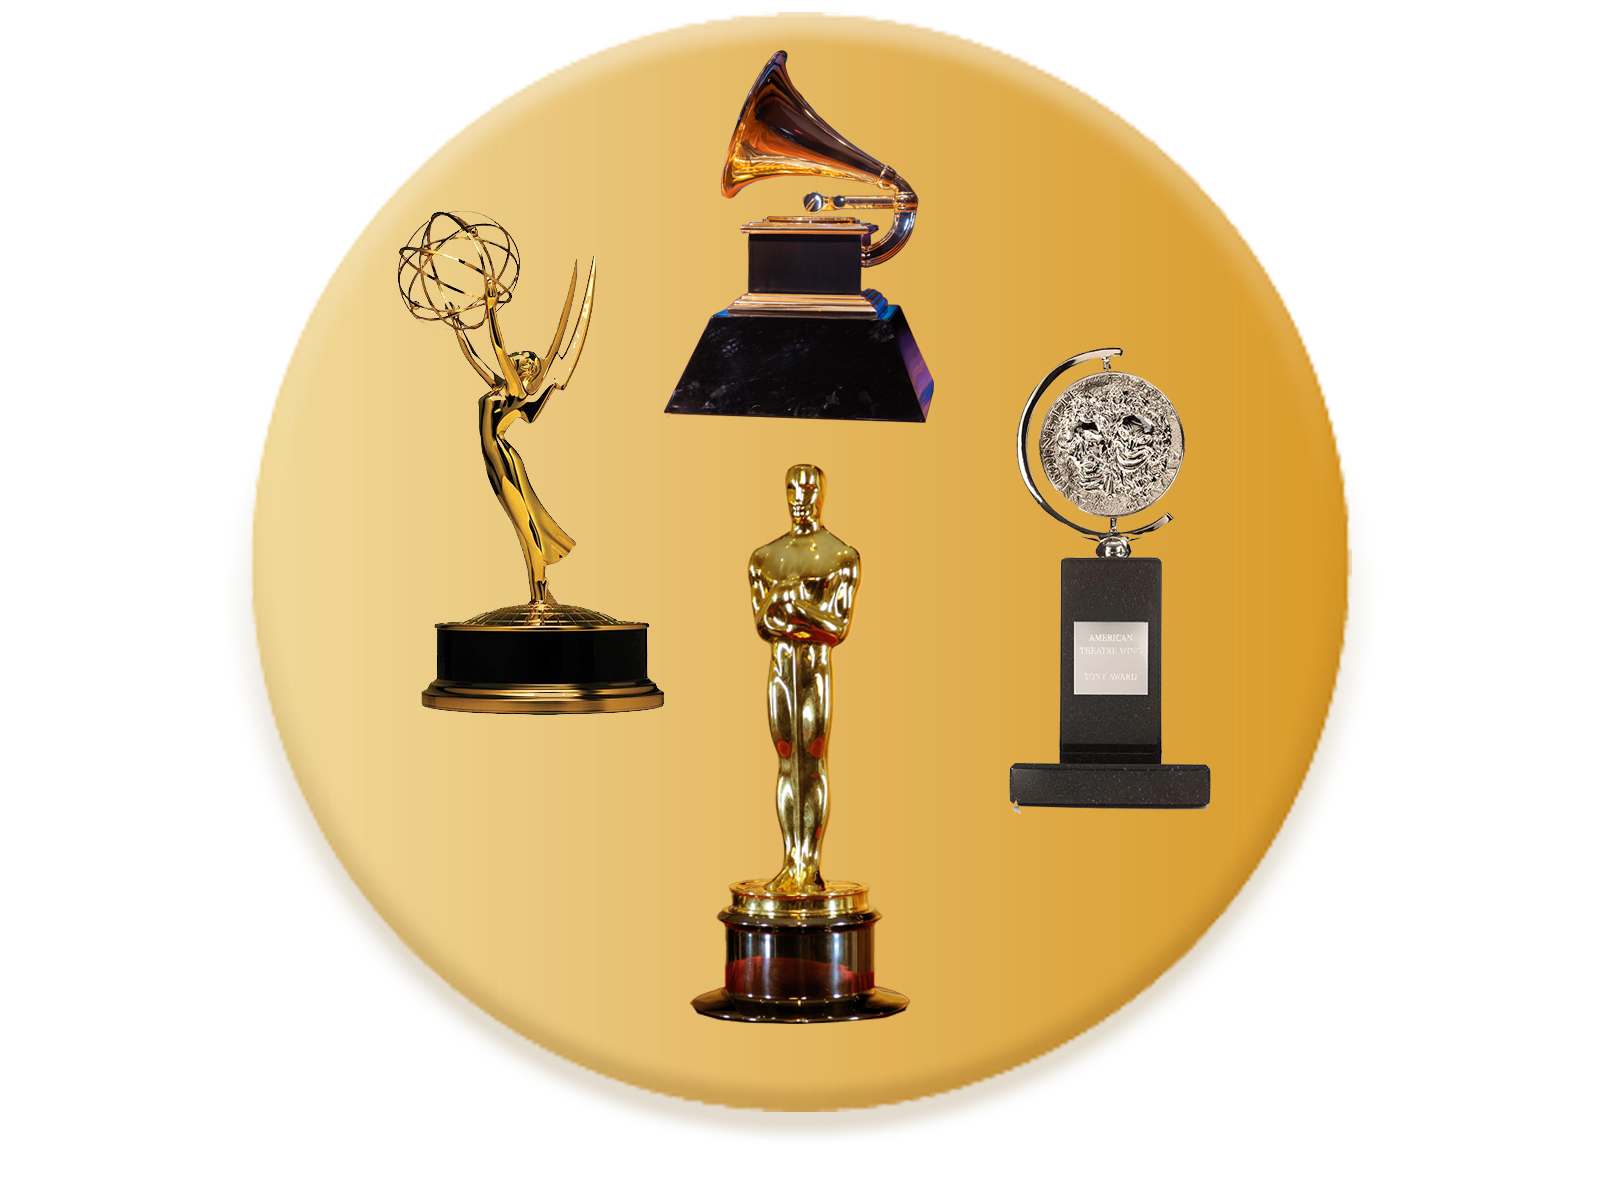 Emmy, Grammy, Oscar, Tony Awards